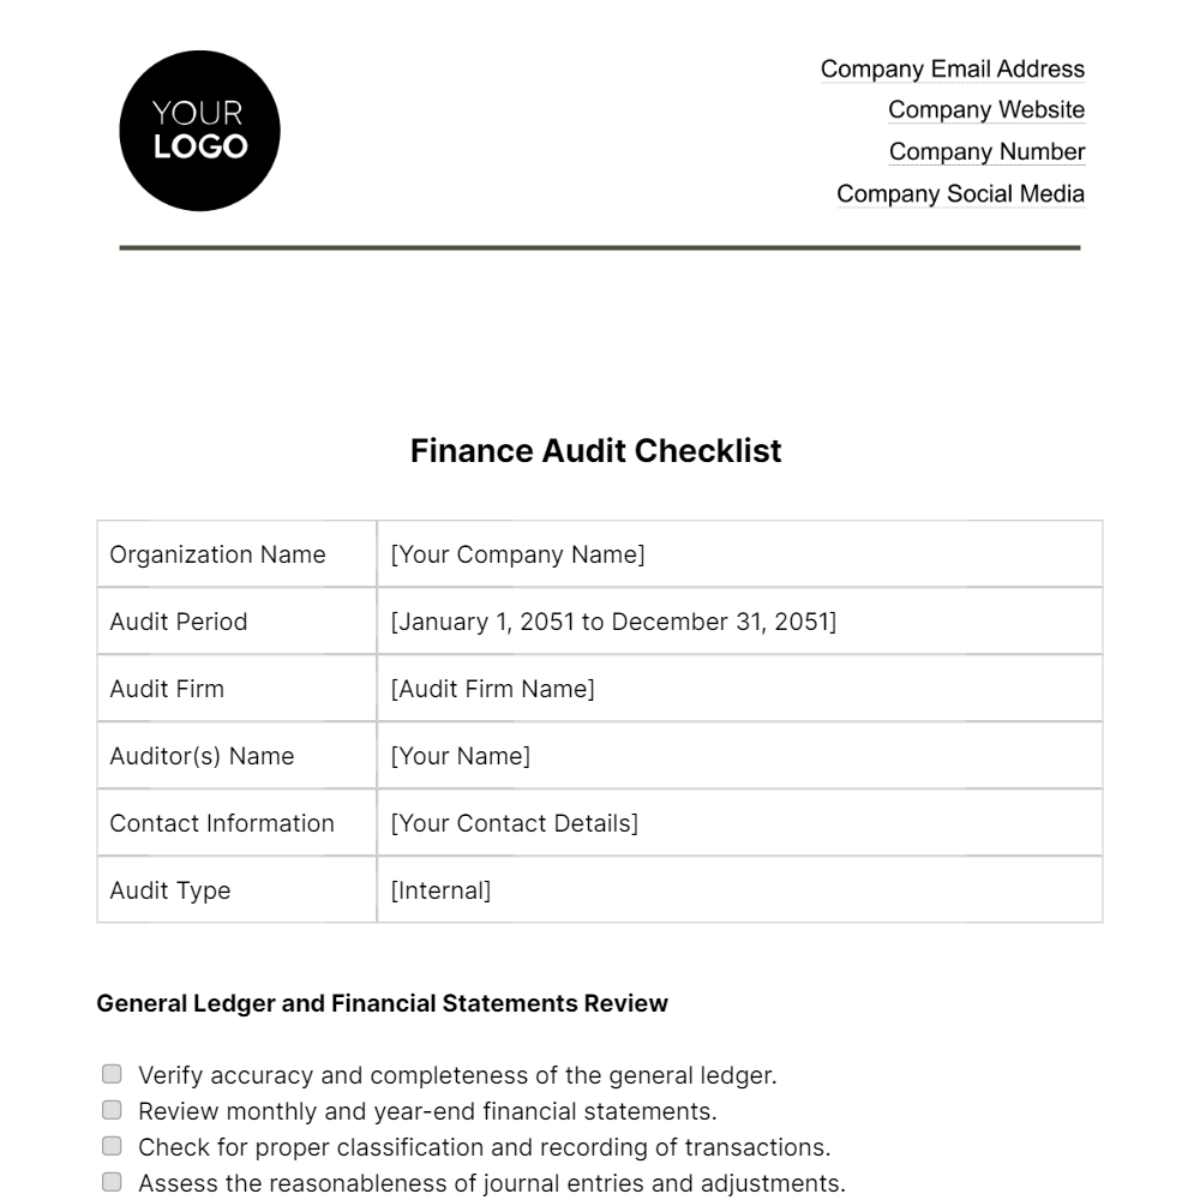 Finance Audit Checklist Template